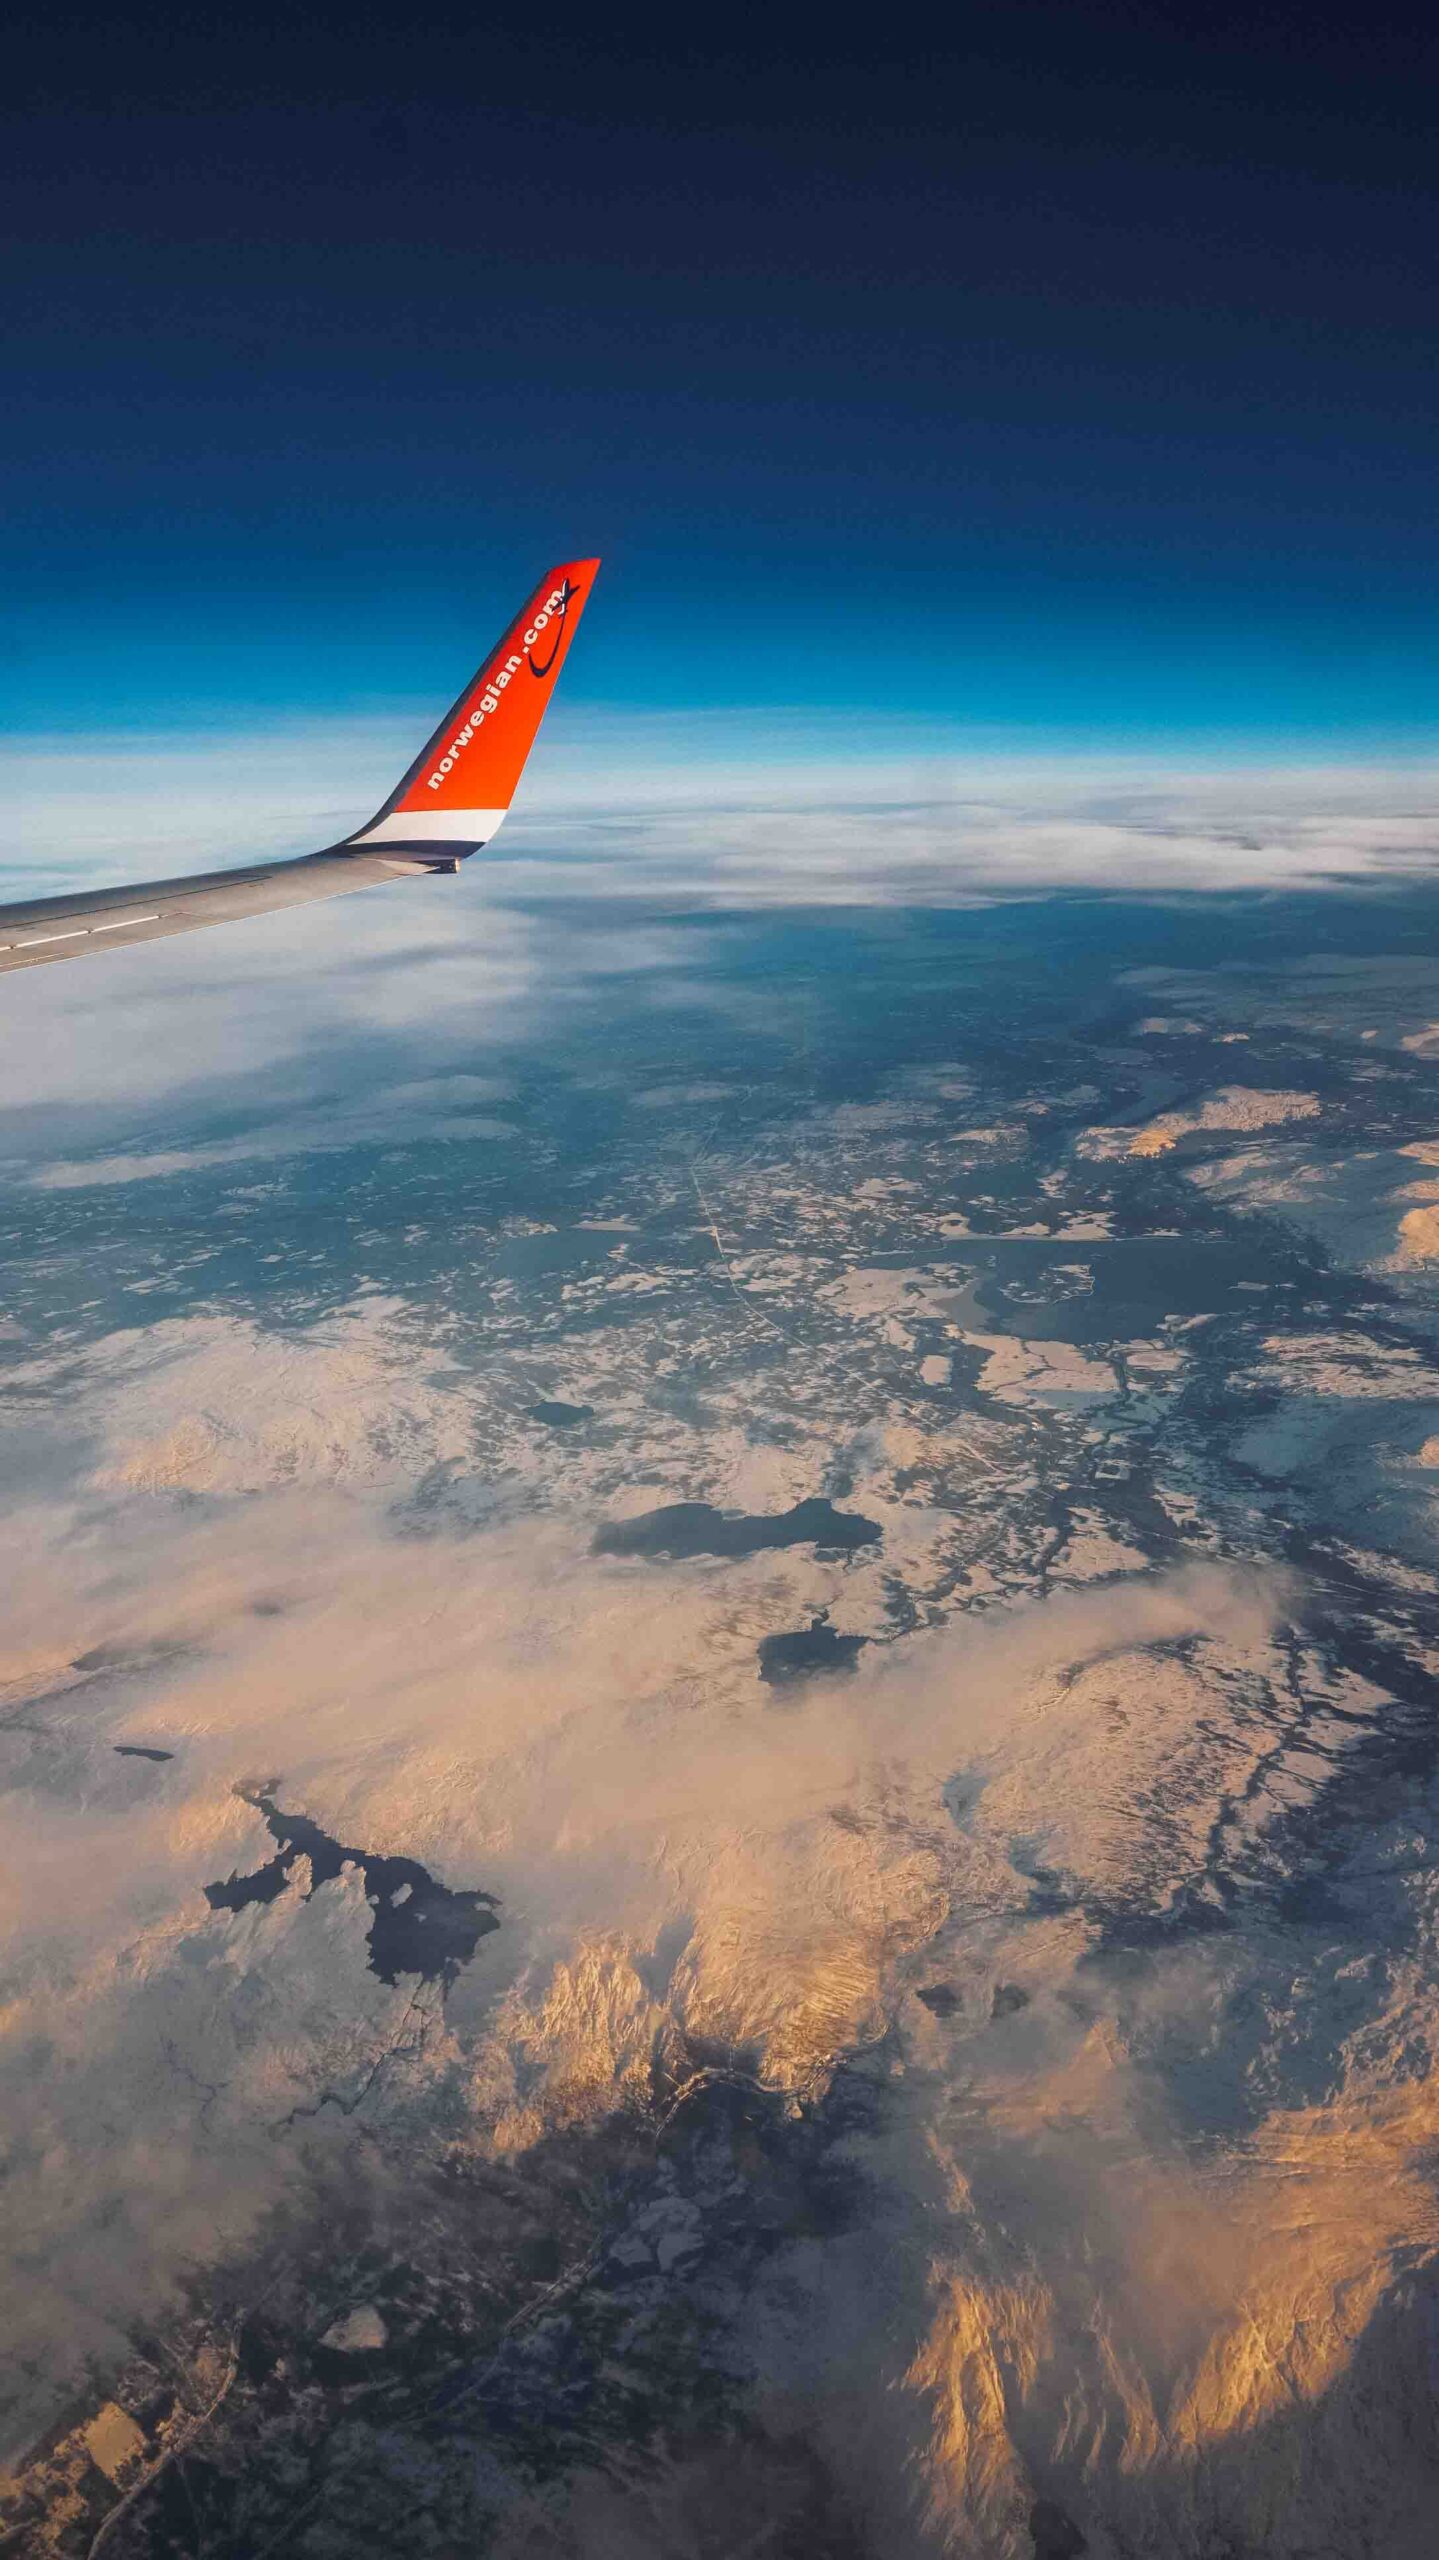 plane over lofoten islands in winter